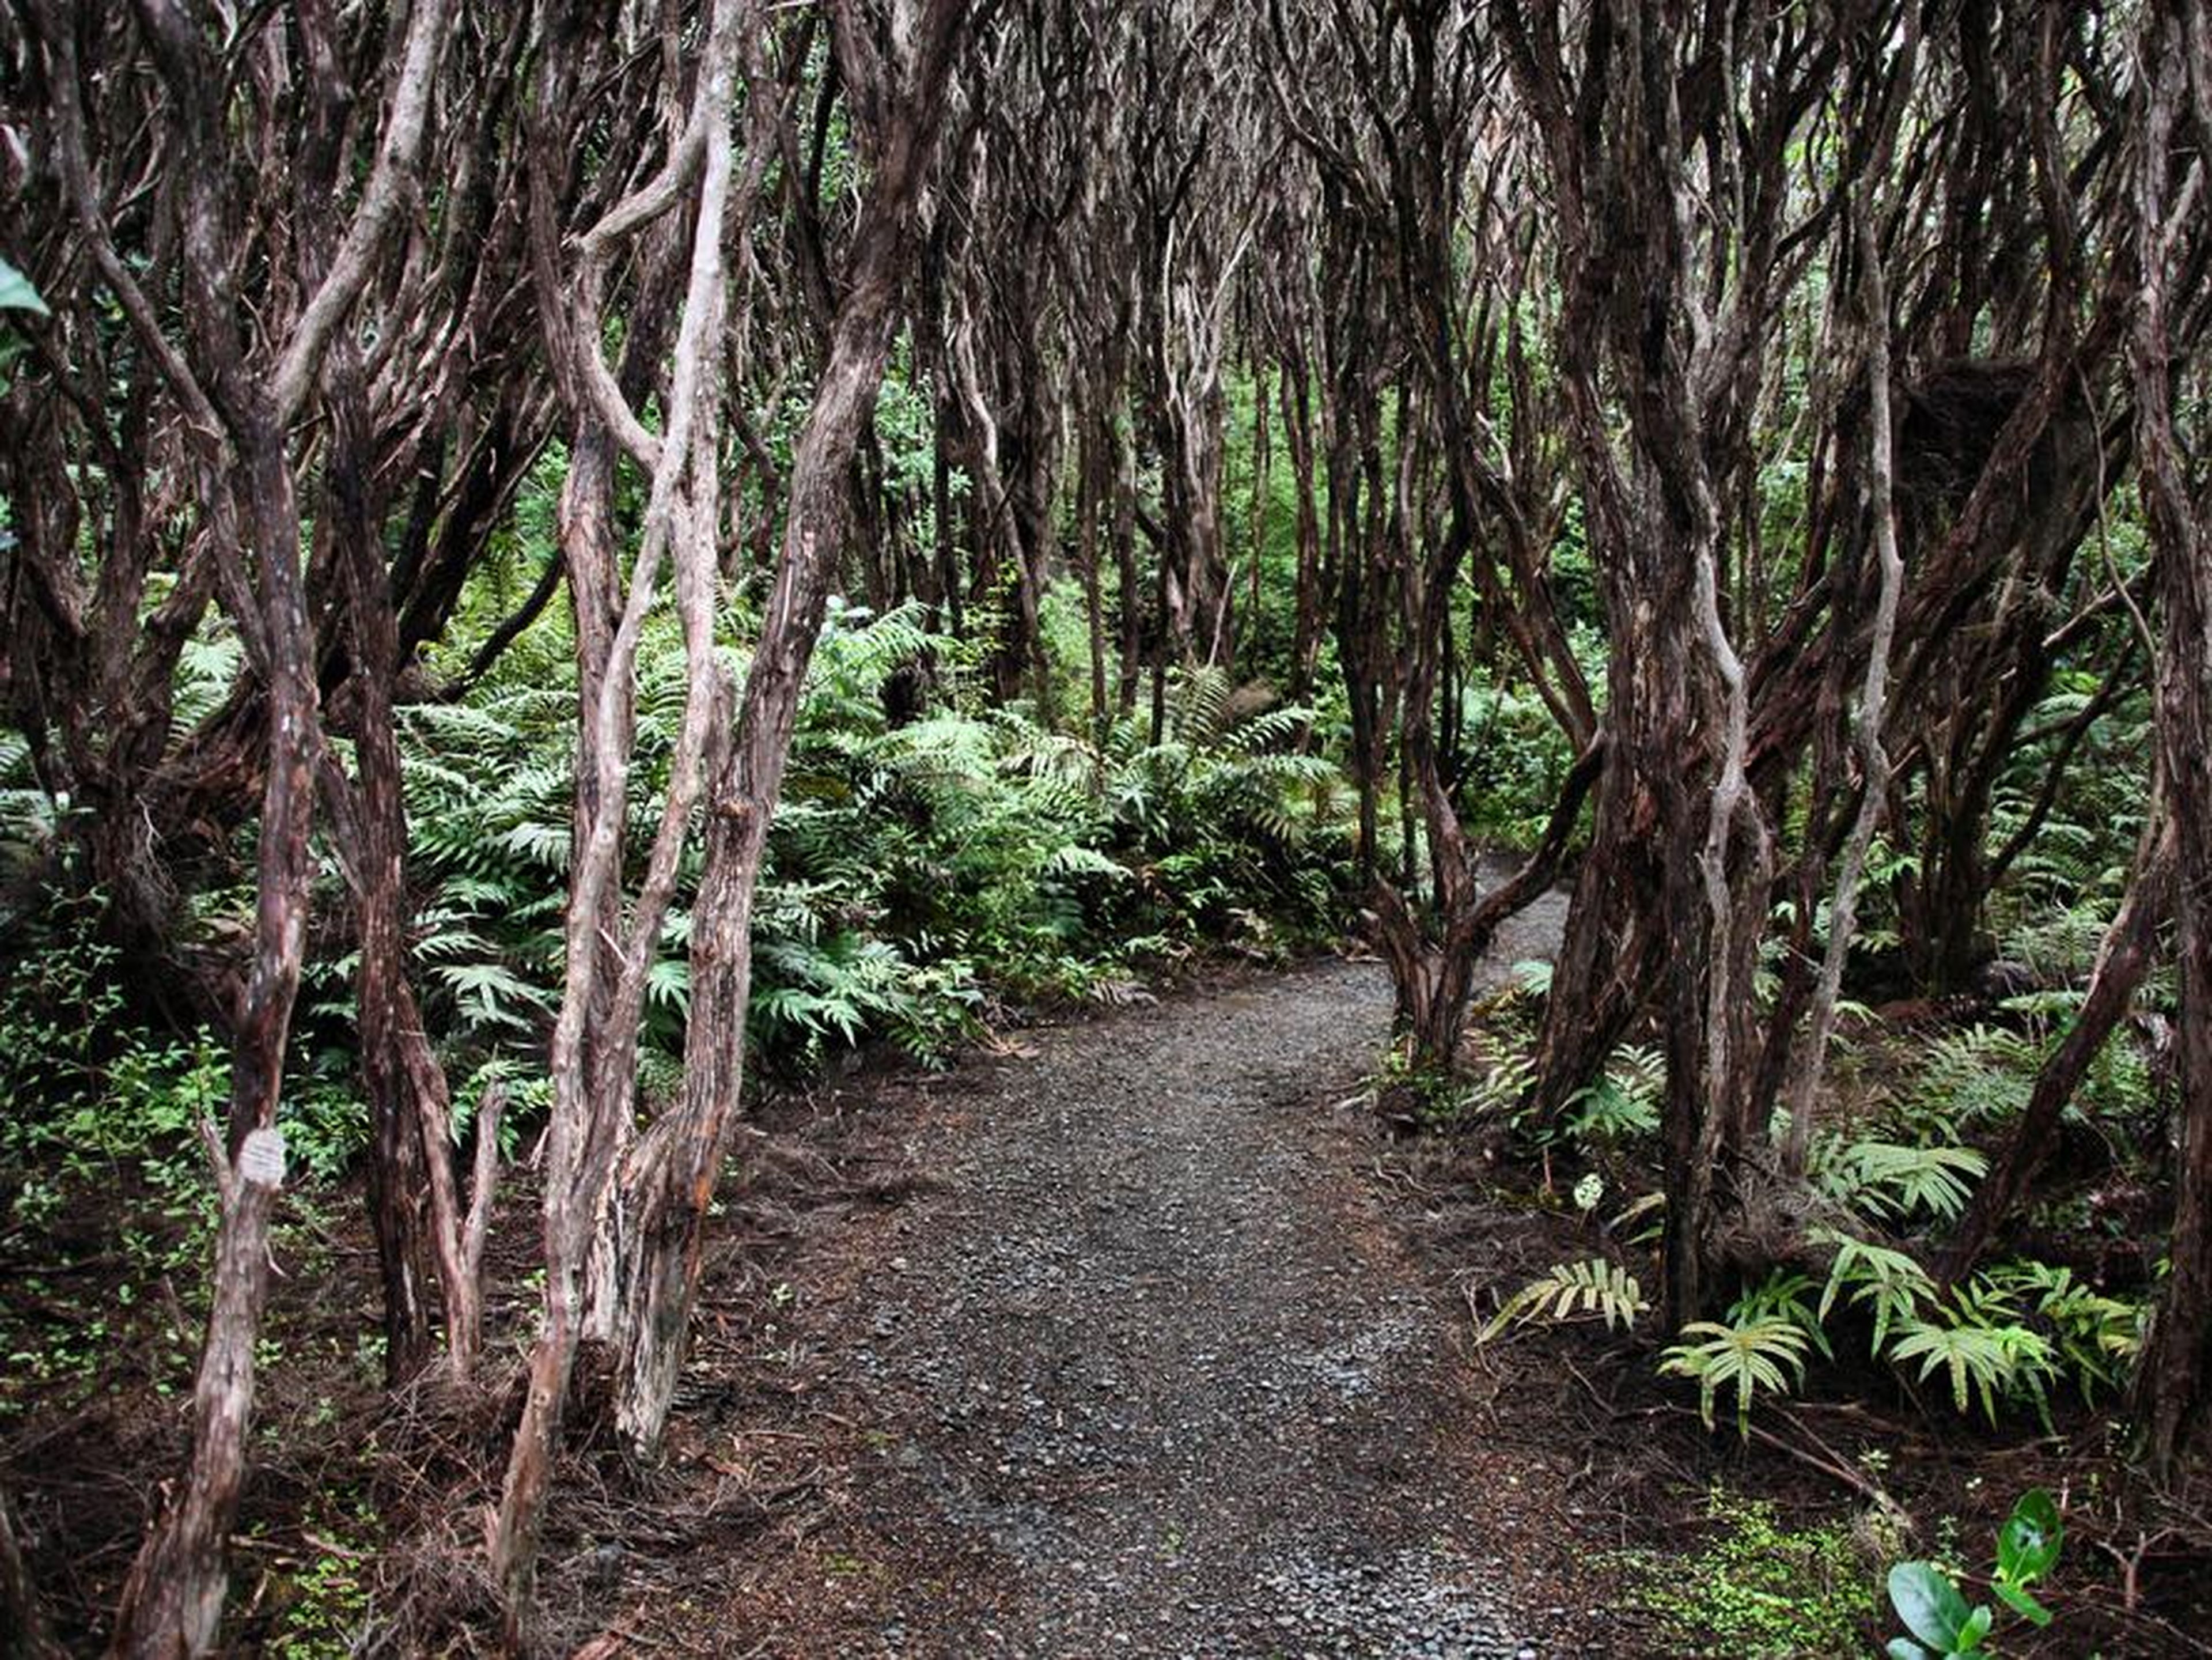 Los árboles Rātā están definidos por hojas verde oscuro y troncos retorcidos.